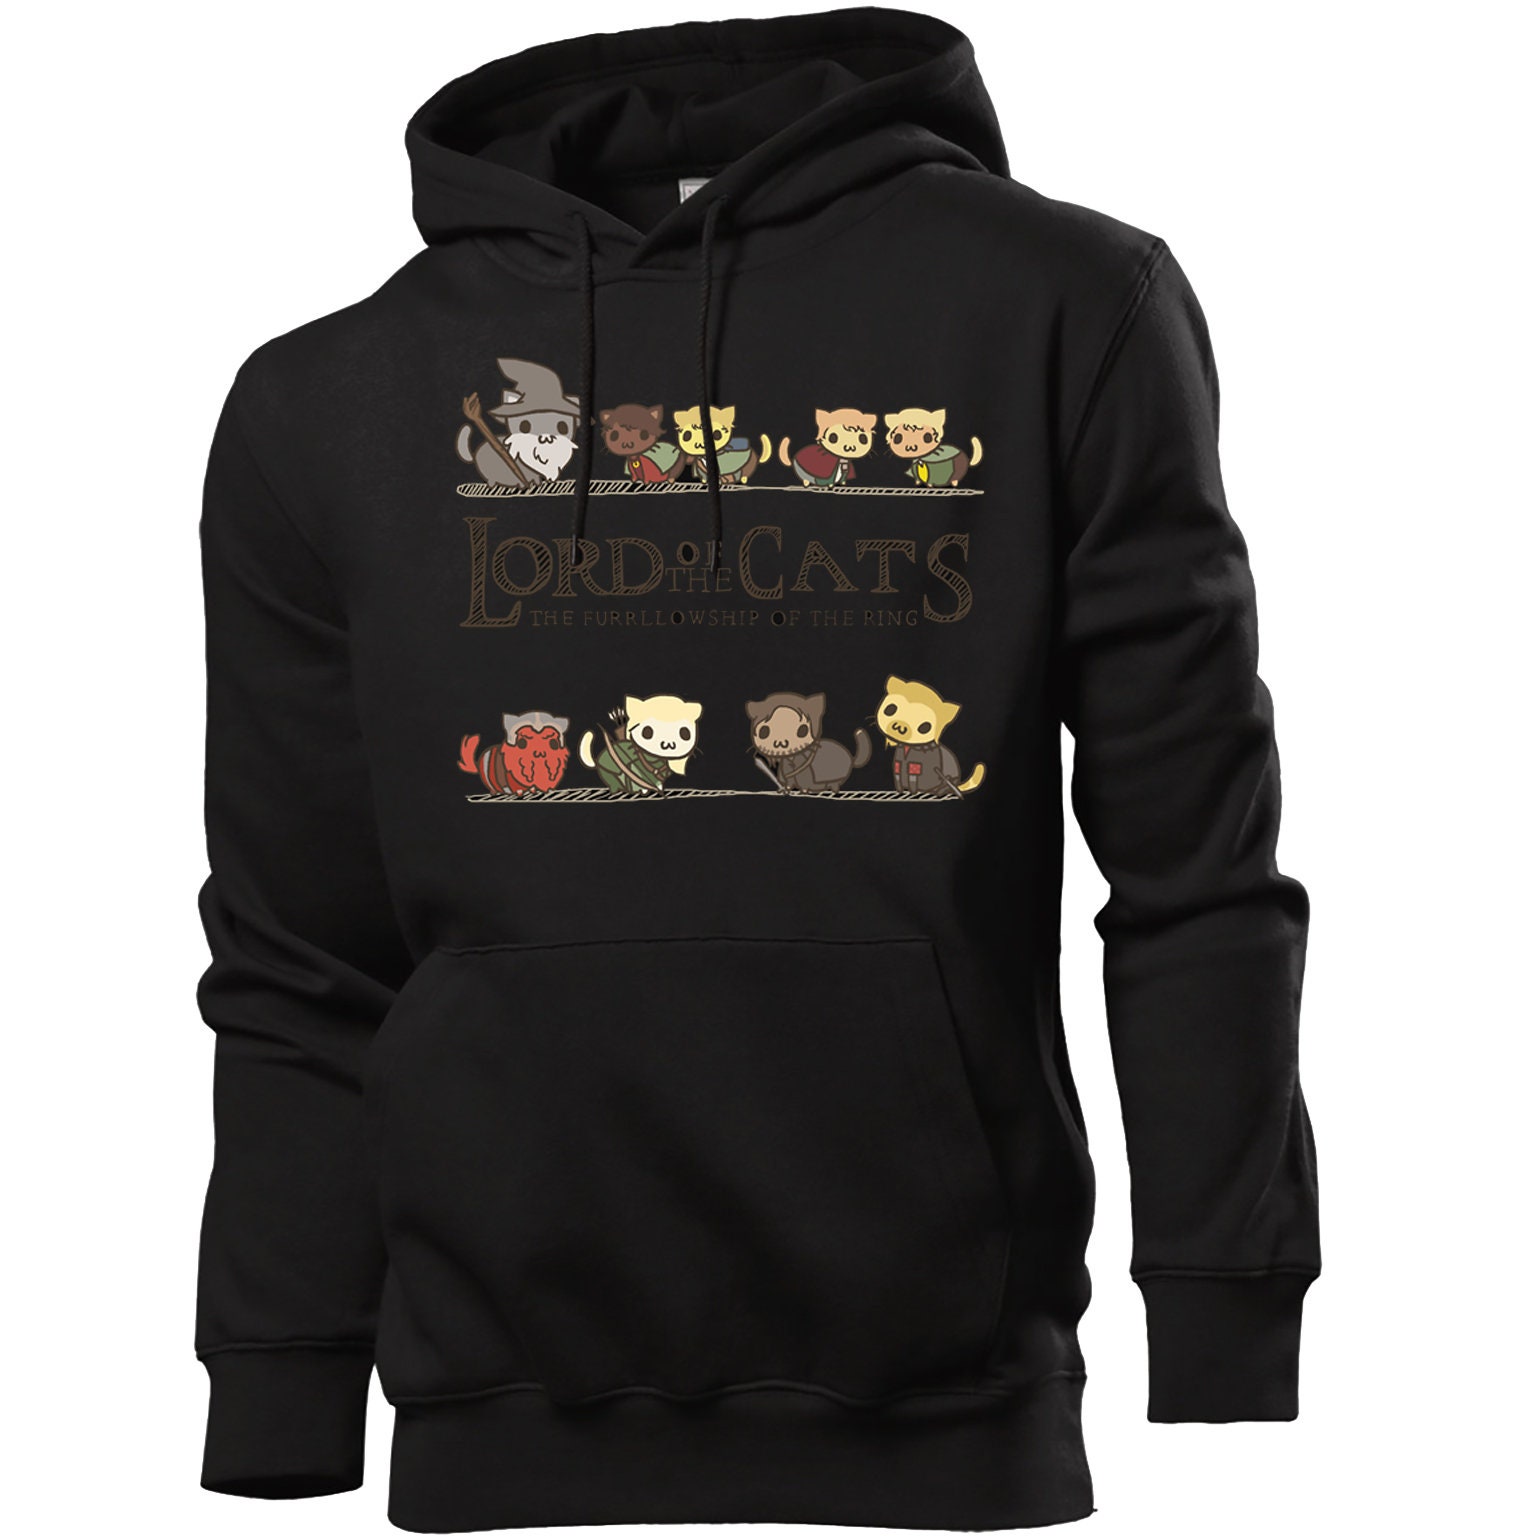 Lord of the rings hoodie lotr cats sweatshirt pullover hoodie | Etsy